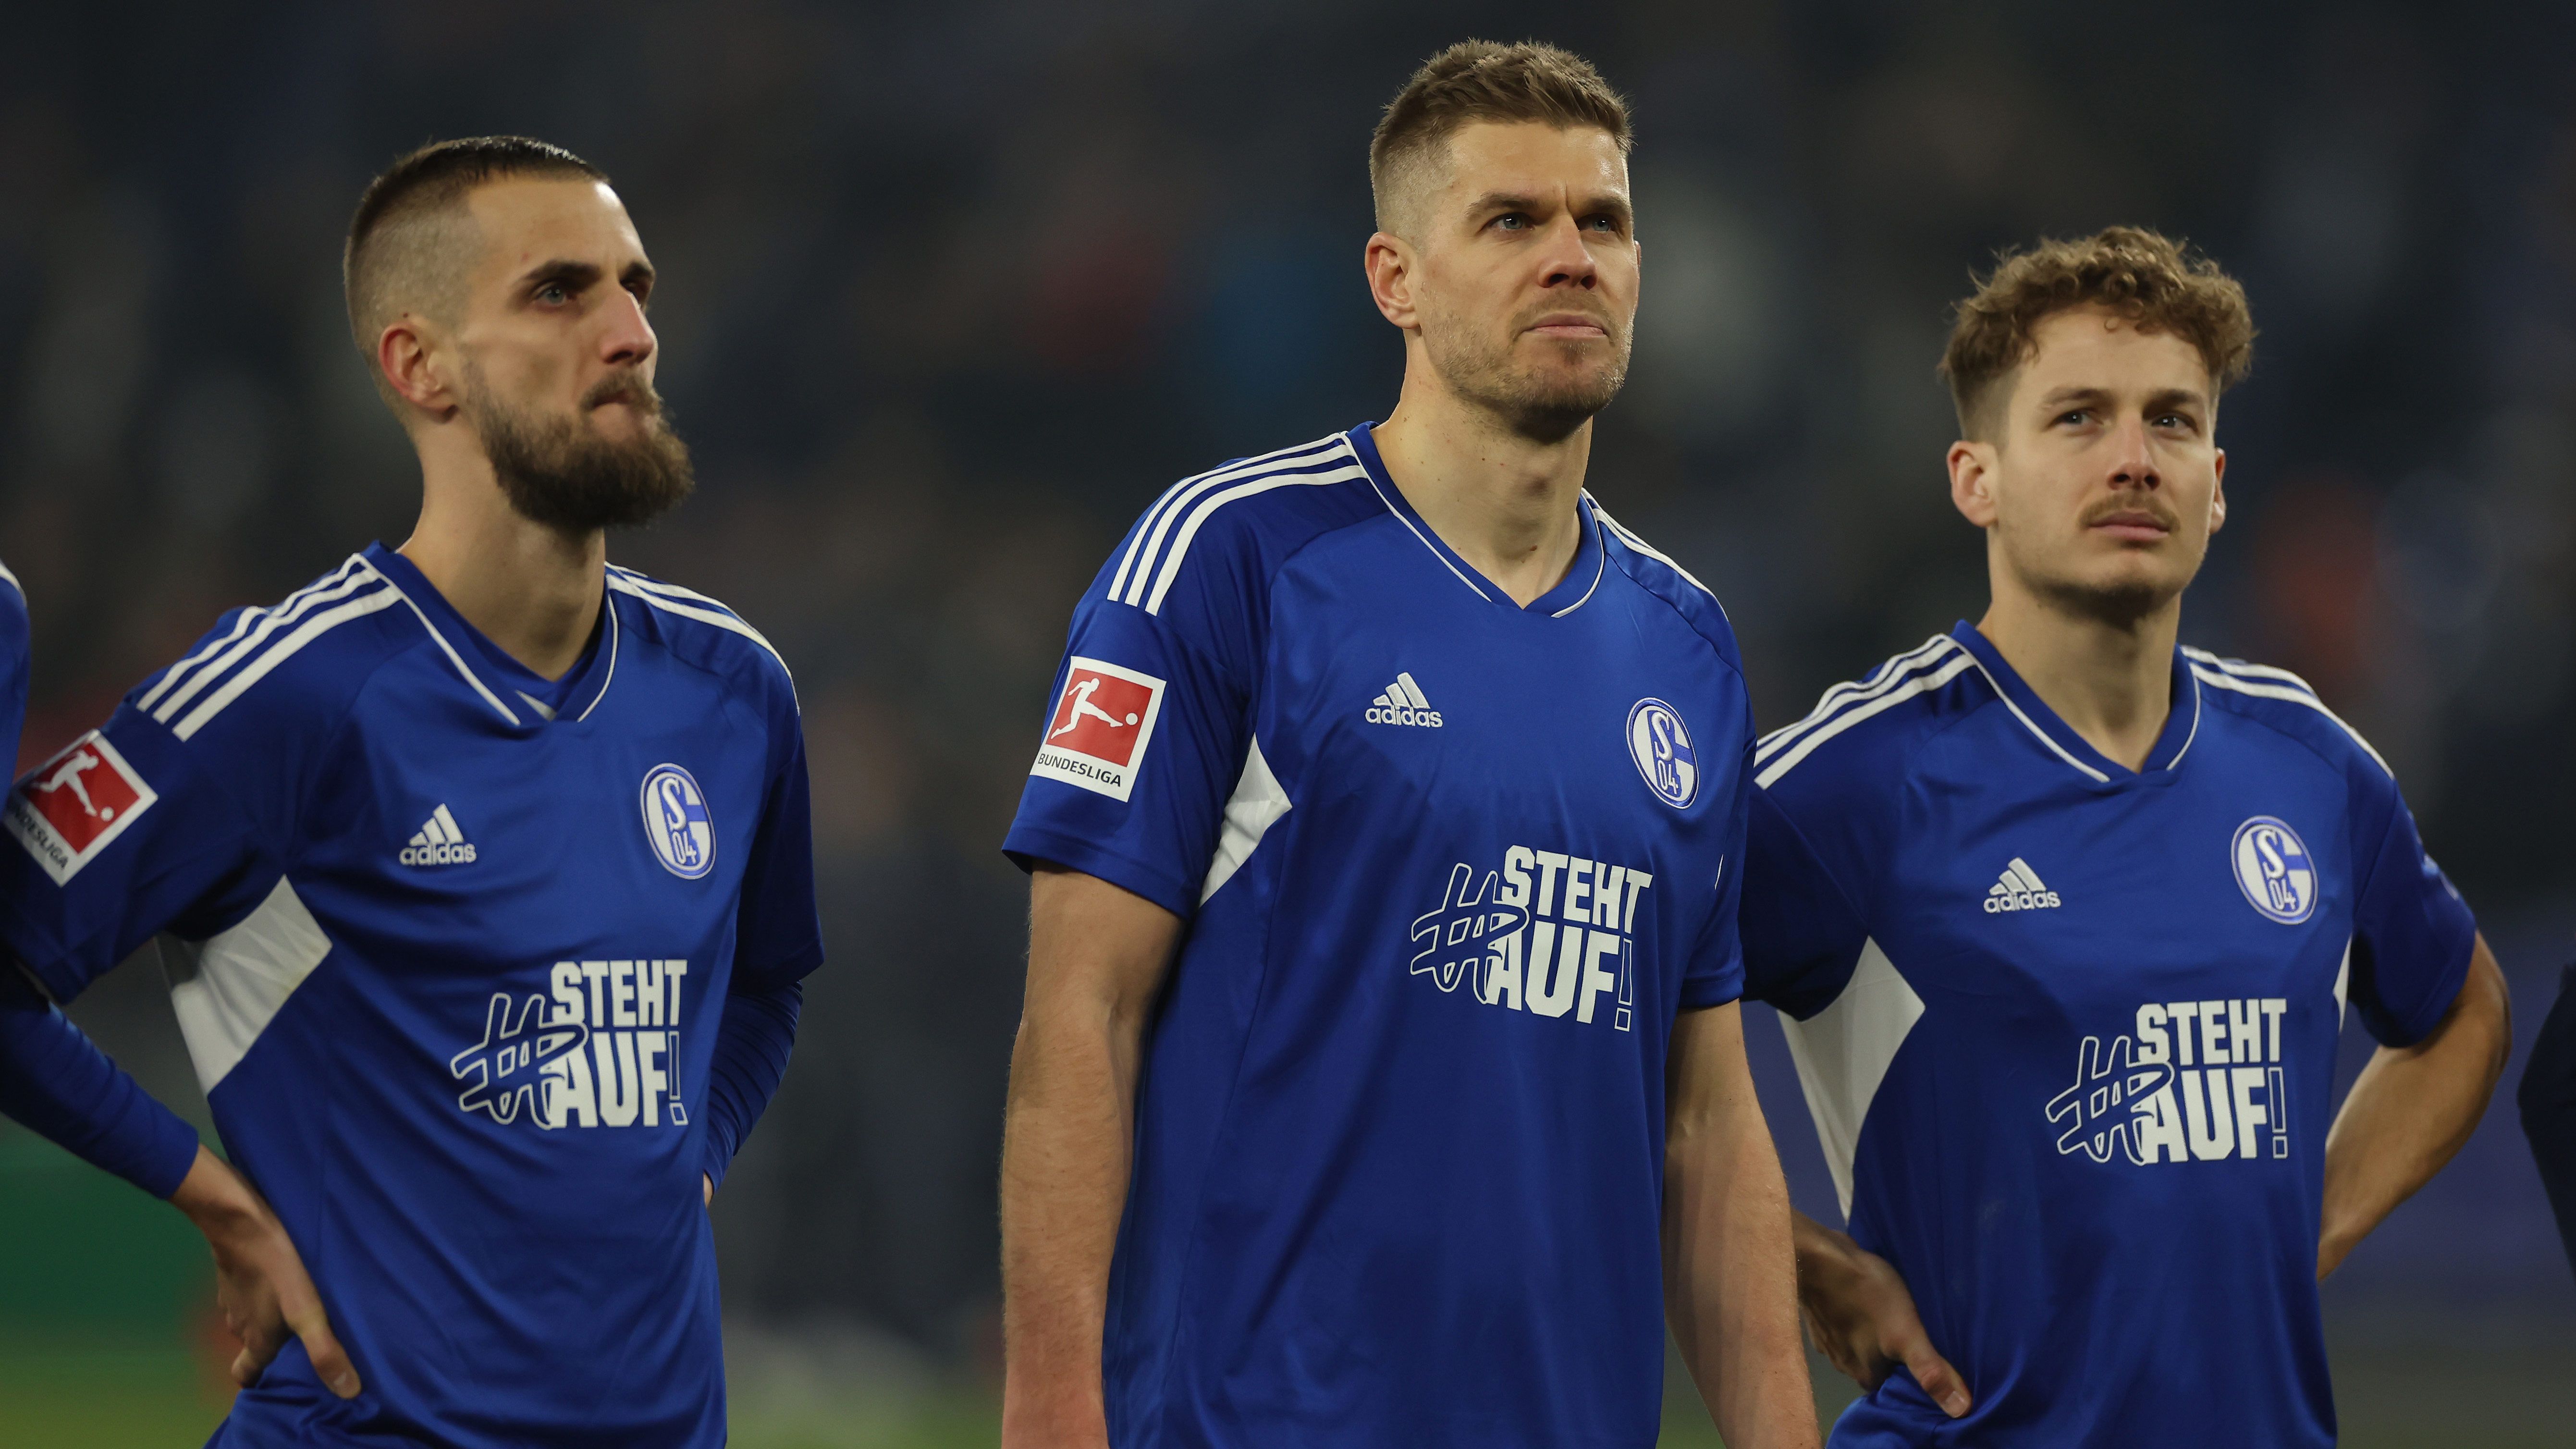 
                <strong>Platz 18: FC Schalke 04</strong><br>
                Sieben Punkte Abstand hat der FC Schalke 04 auf einen Nicht-Abstiegsplatz. Doch das Team mit der roten Laterne hat sich längst noch nicht aufgegeben. Zuletzt gab es tatsächlich drei 0:0 in Serie - gegen Köln, Mönchengladbach und Wolfsburg. Das dürfte den "Knappen" Hoffnung machen. Auf der anderen Seite heißt das jedoch auch, dass S04 drei Mal kein Tor erzielt hat. Das kommt nicht von ungefähr, schließlich stellt Schalke mit nur 14 Toren die schwächste Offensive der Bundesliga. Der letzte Sieg der Elf von Thomas Reis ist schon über drei Monate her. Schafft "Königsblau" noch den großen Turnaround?
              